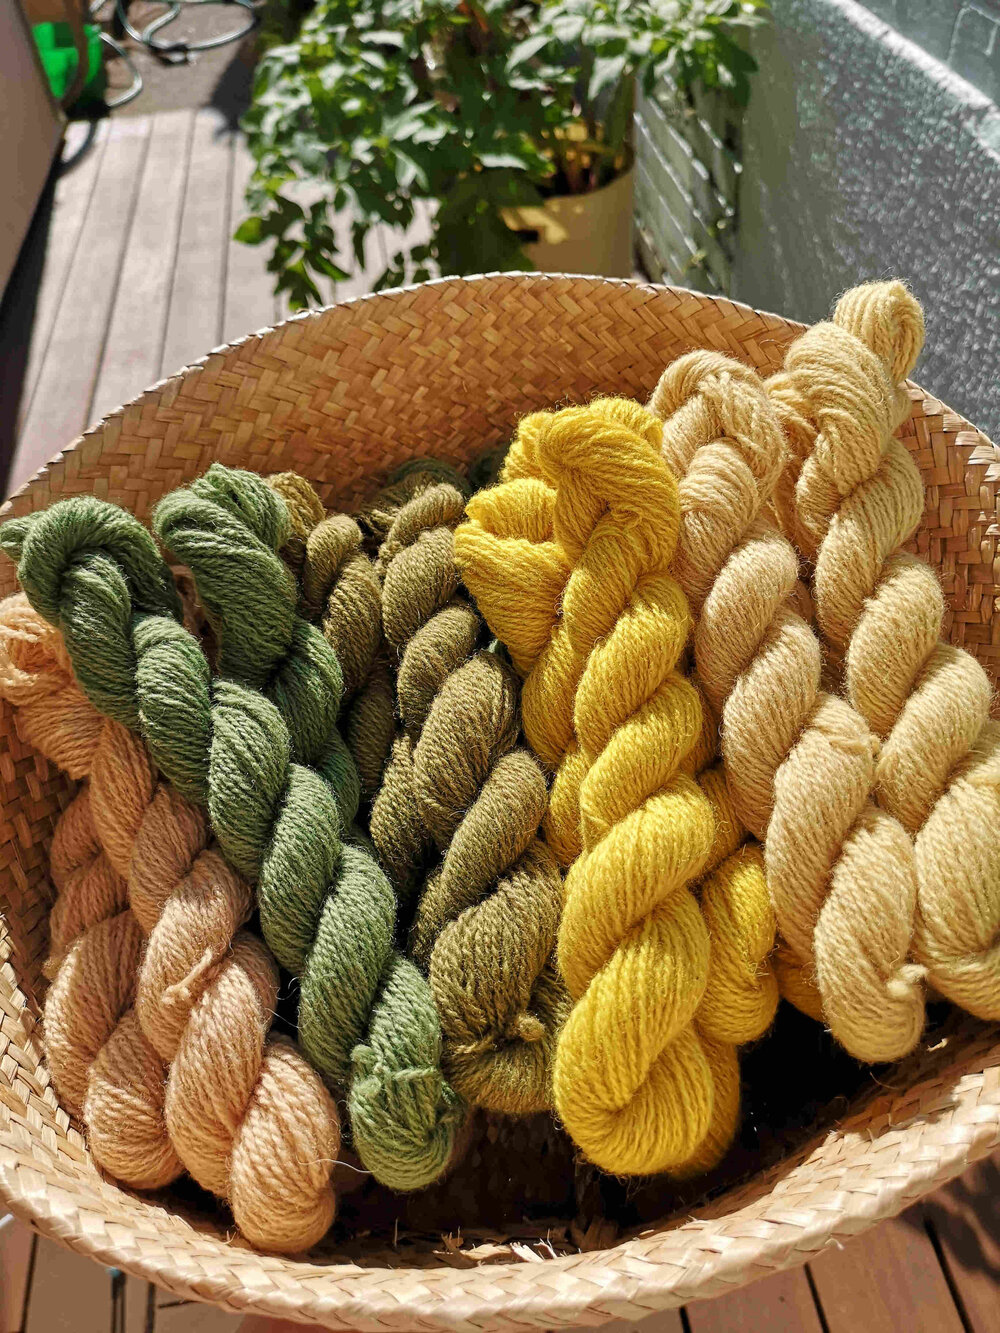 Ria Burns Knitwear Naturally Dyed Yarn Spring Yarn Club Mini Skeins in Basket 1 web.jpg